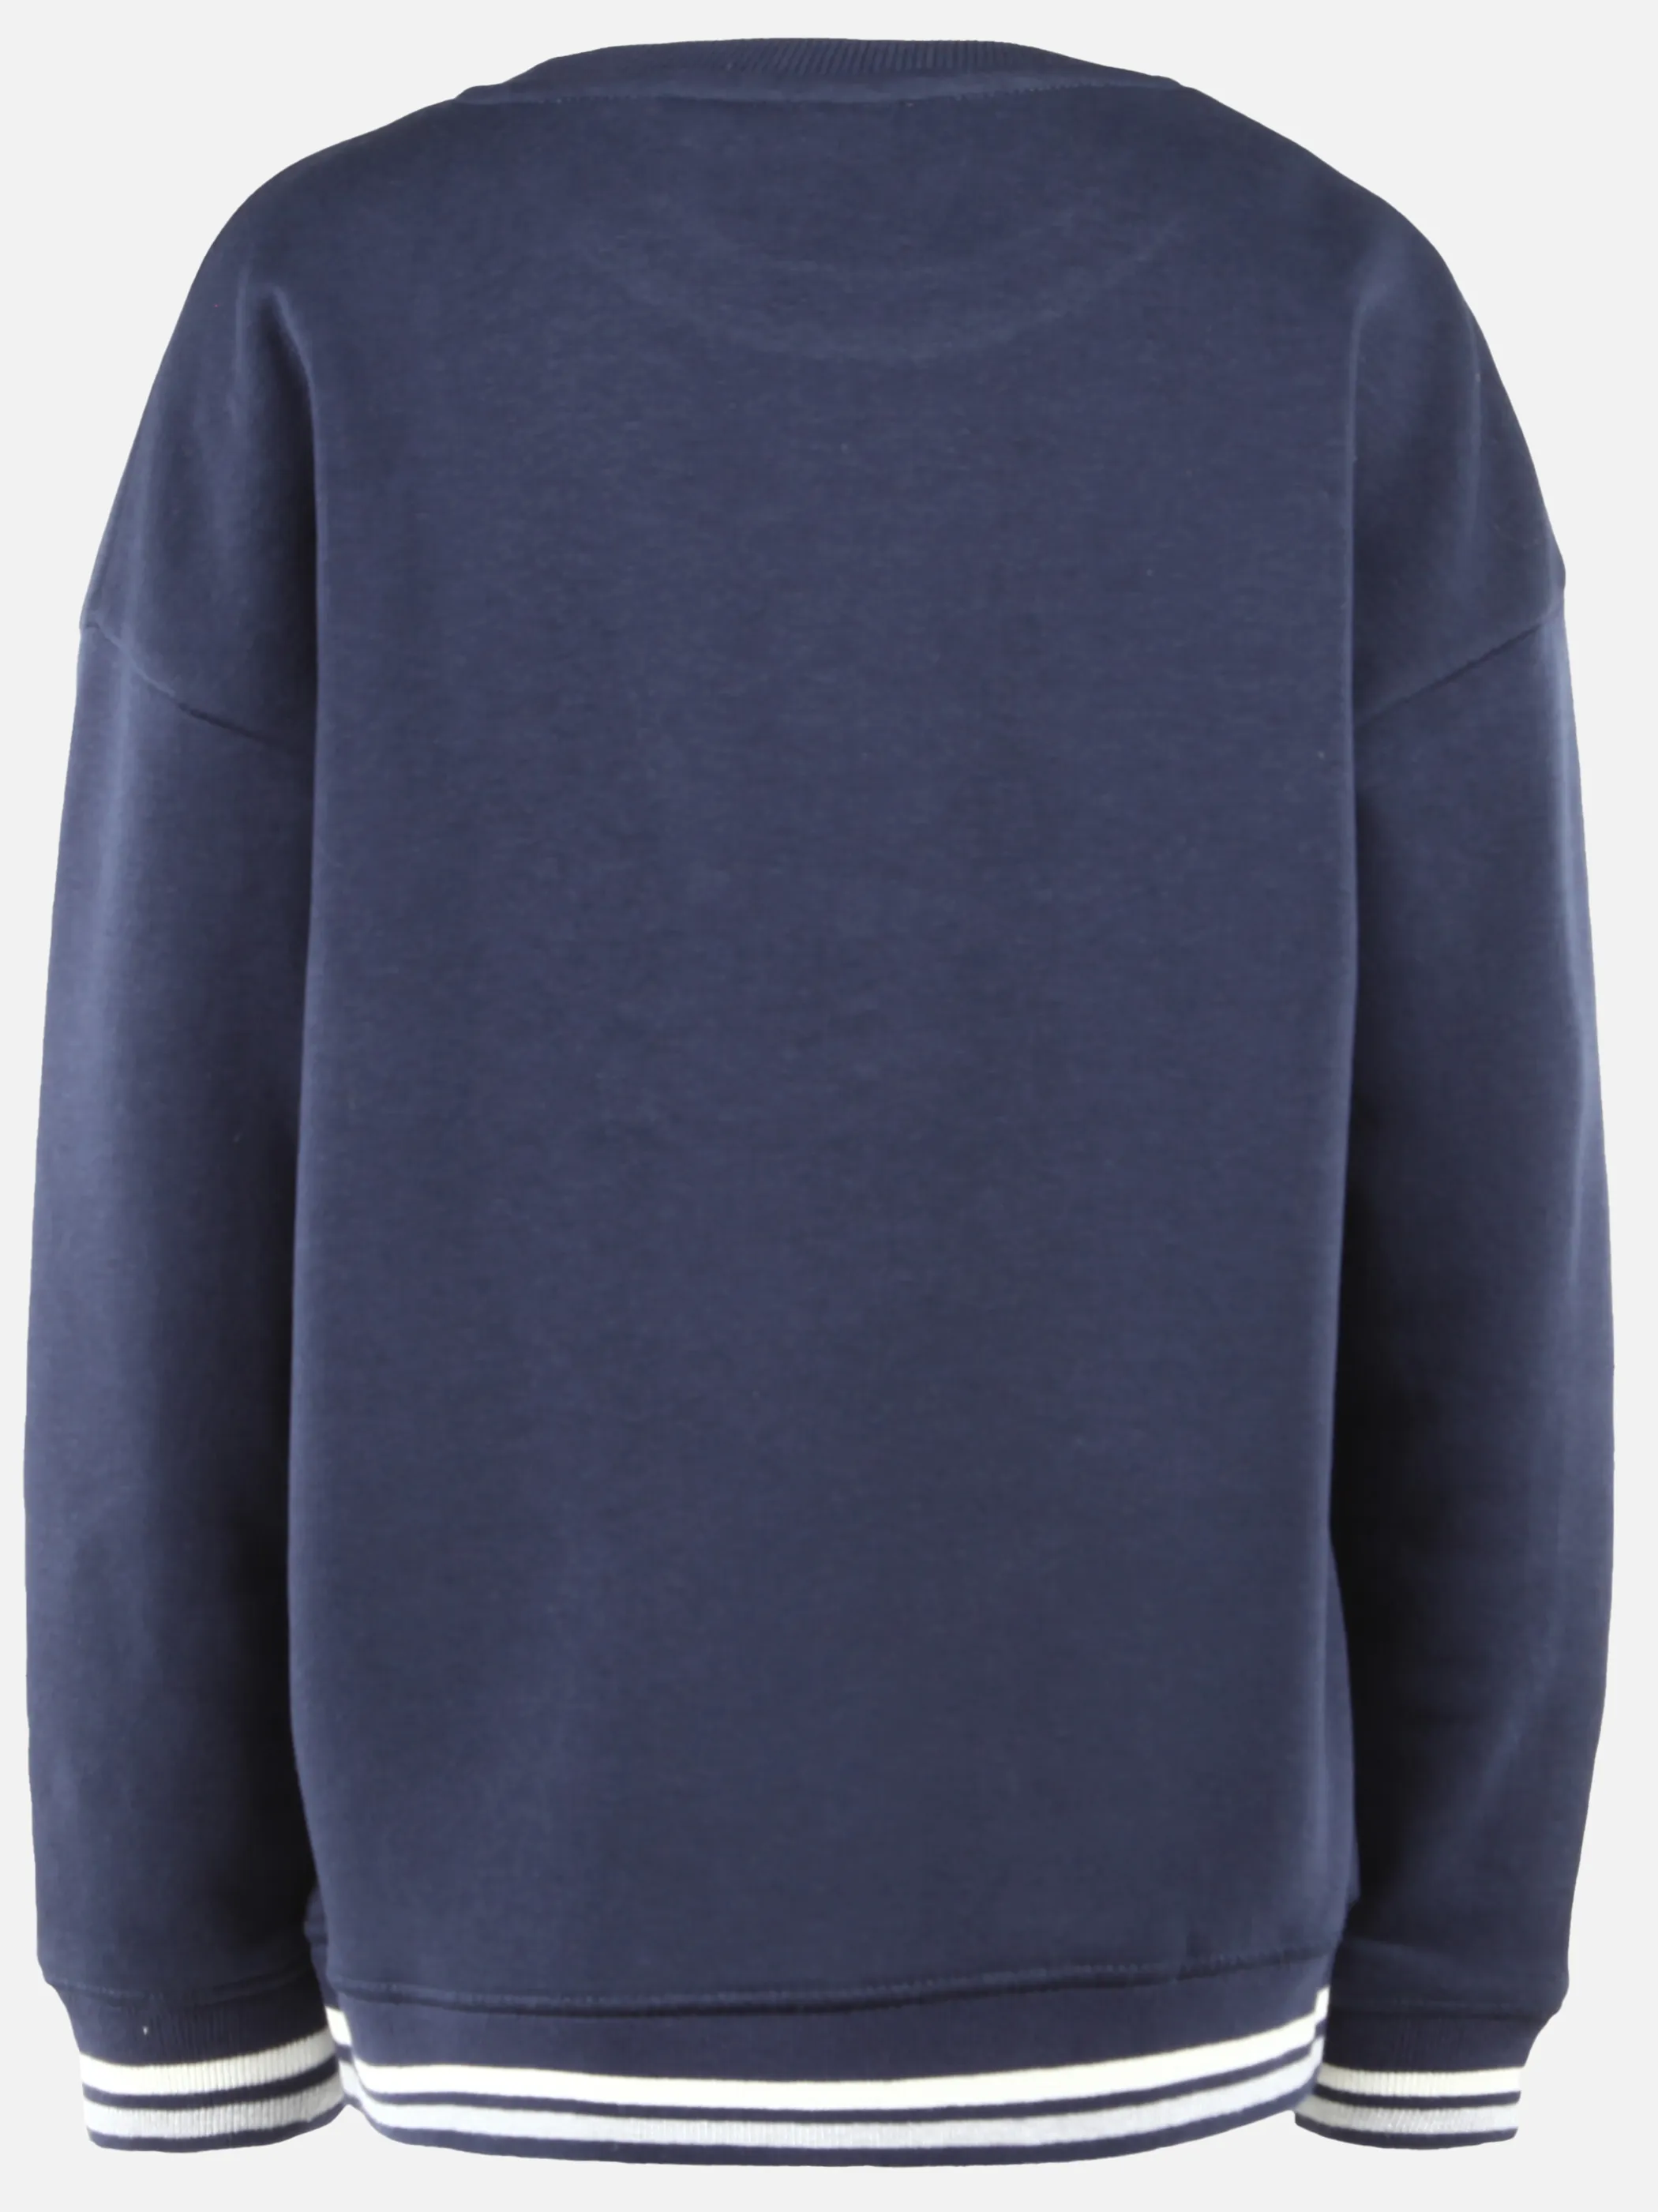 Stop + Go KJ Sweatshirt mit Print in blau Blau 899784 BLAU 2